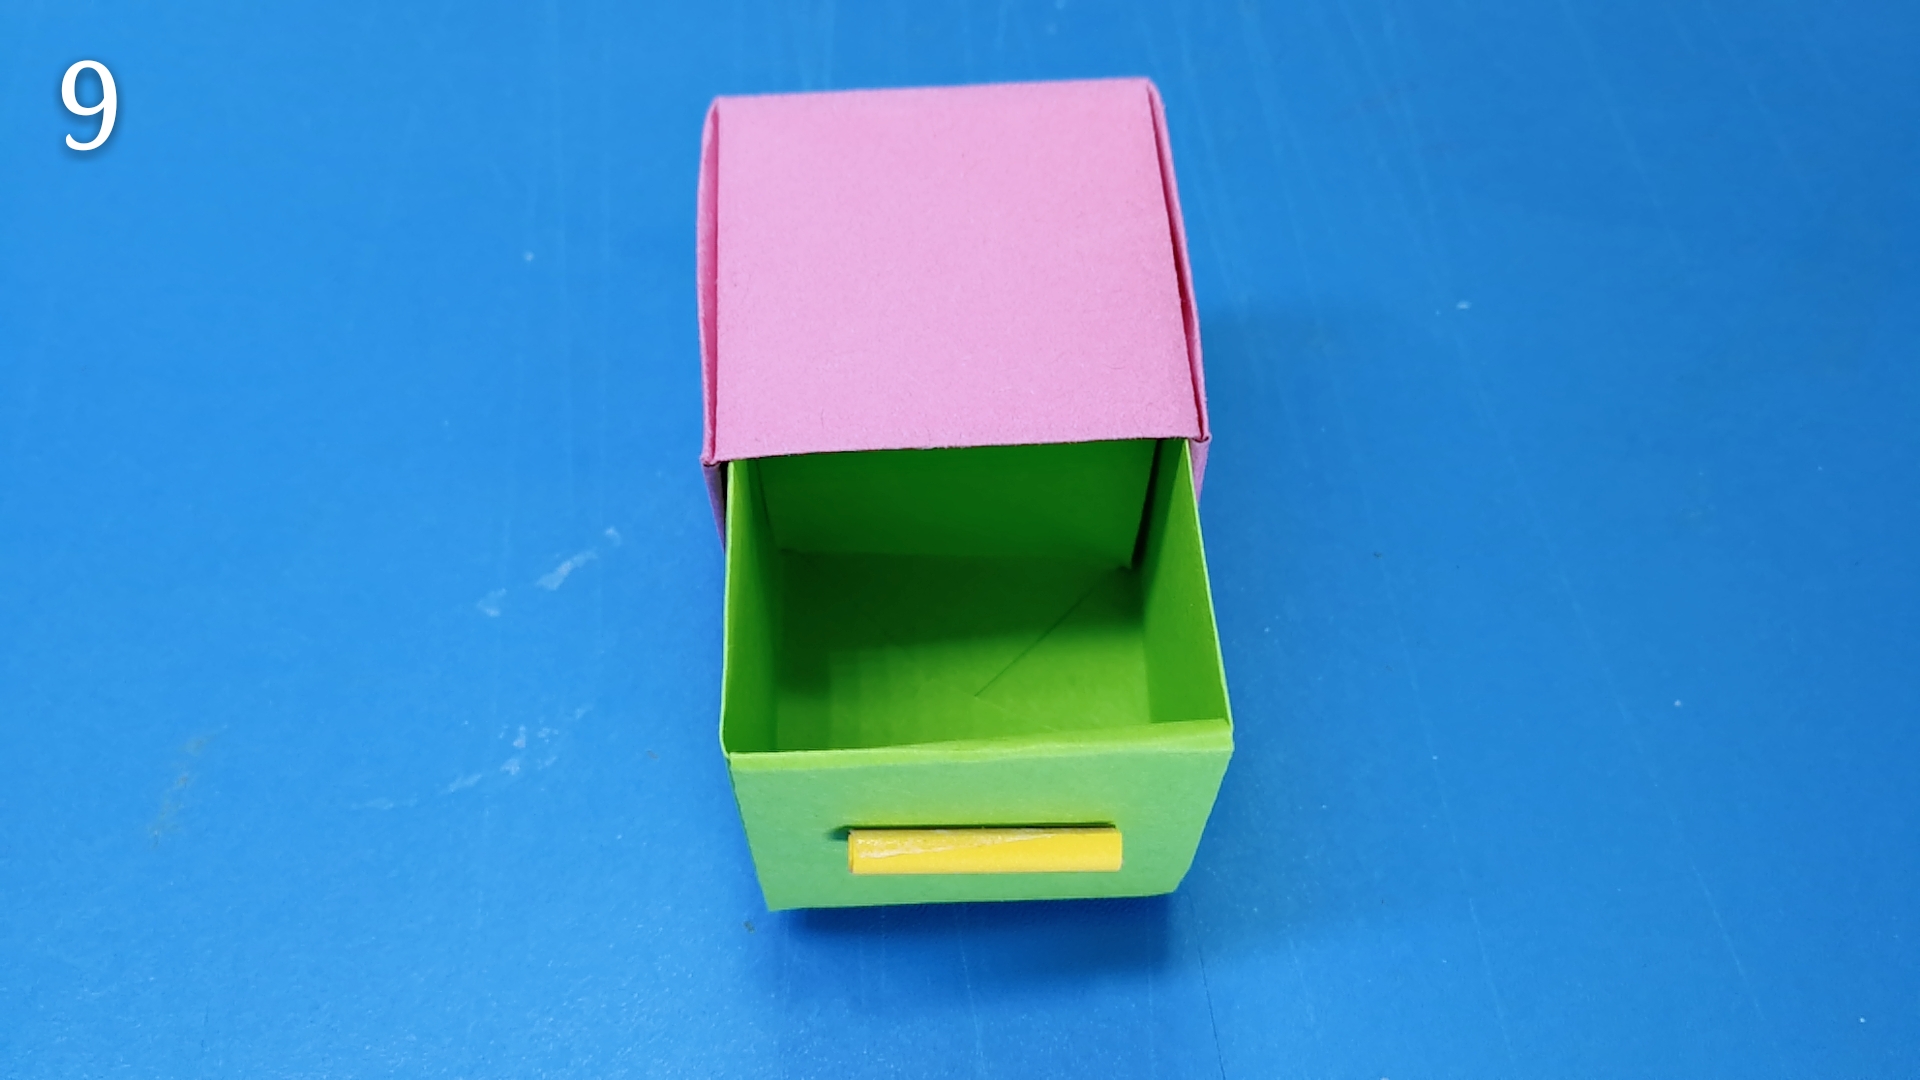 纸盒抽屉儿童手工图片